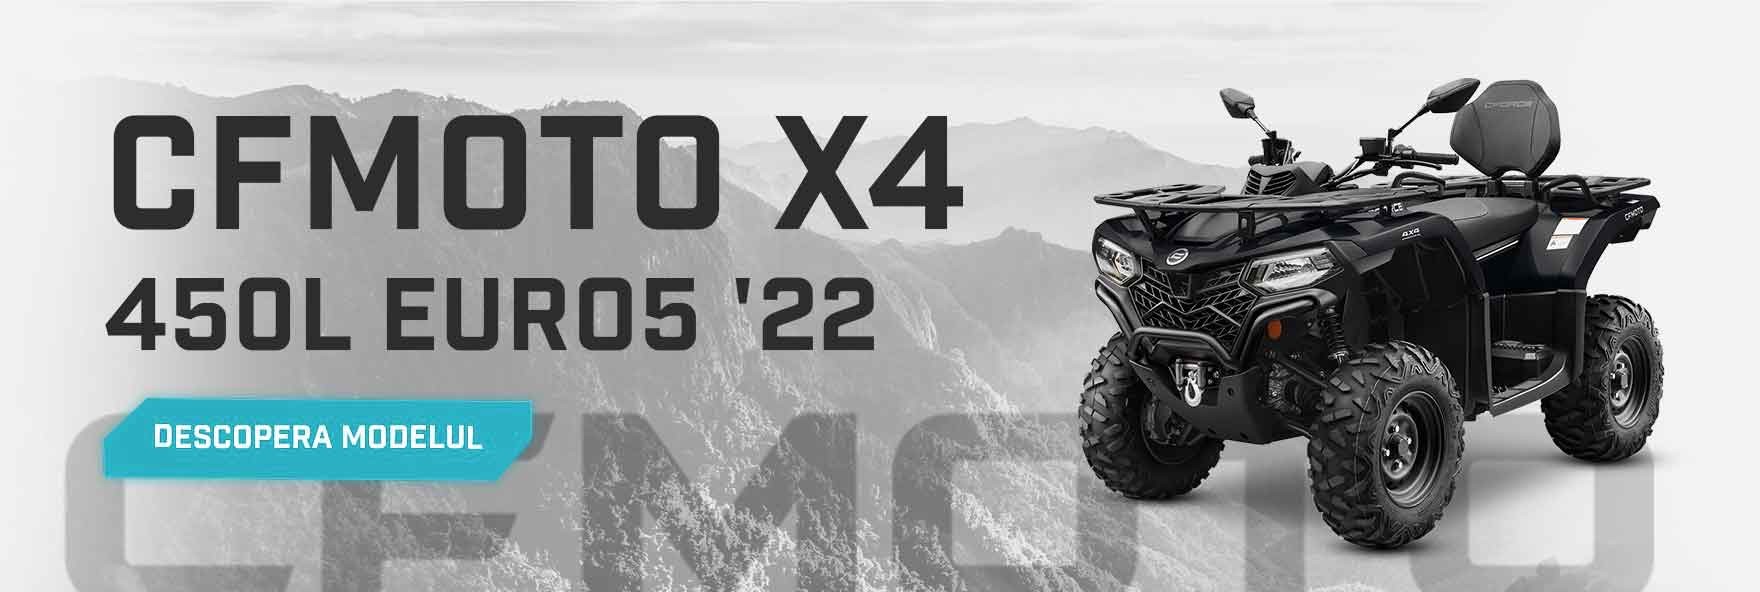 CFMOTO X4 CForce 450L Euro5 '22